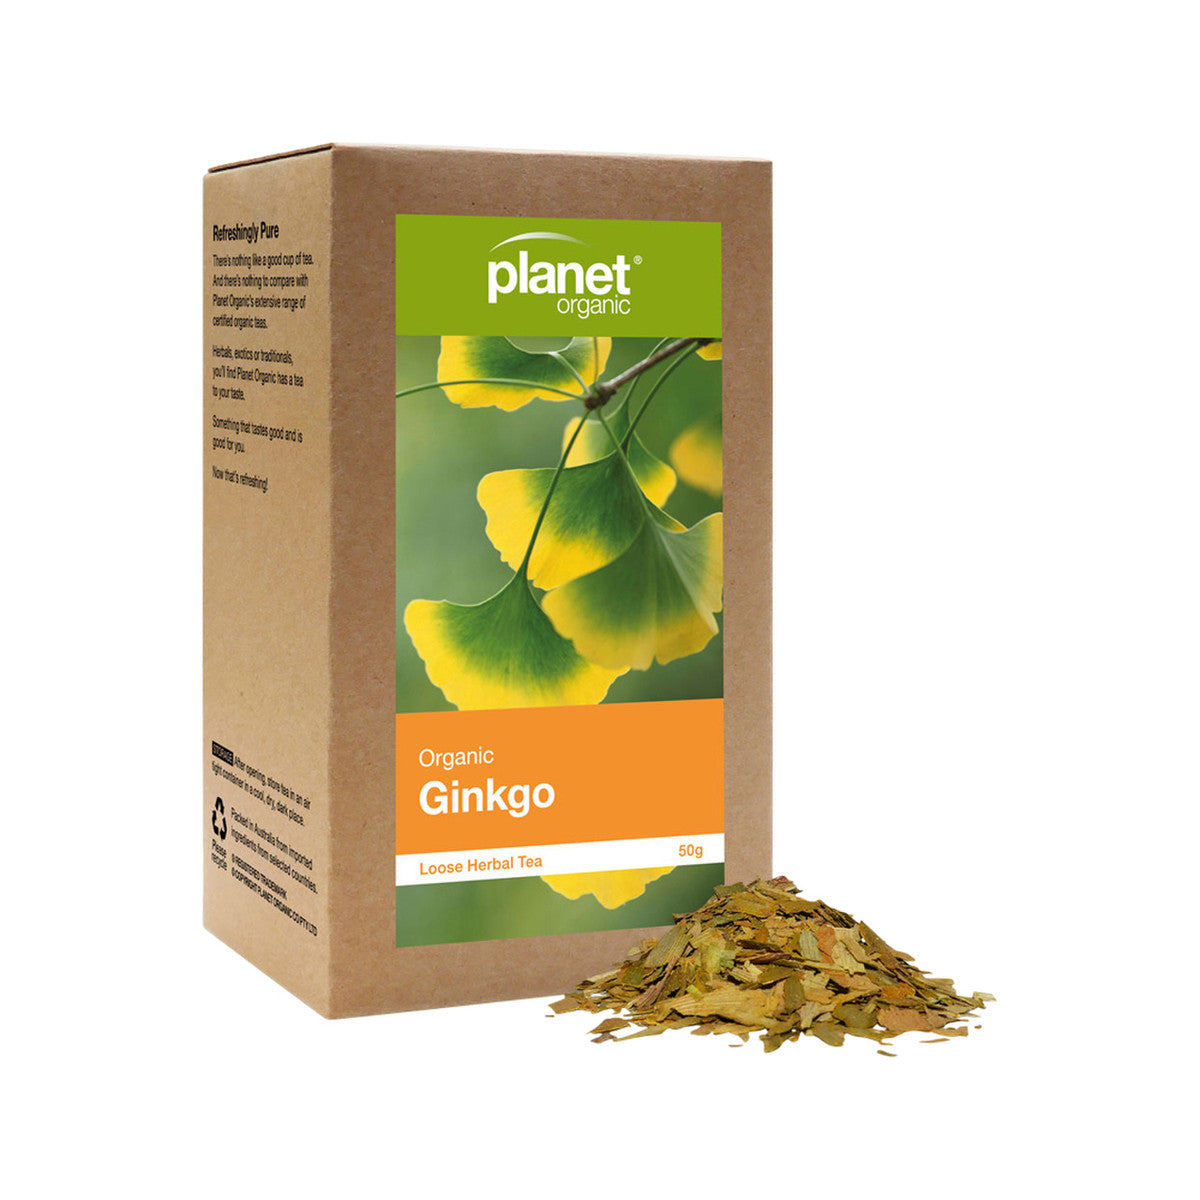 Planet Organic - Ginkgo Loose Leaf Tea